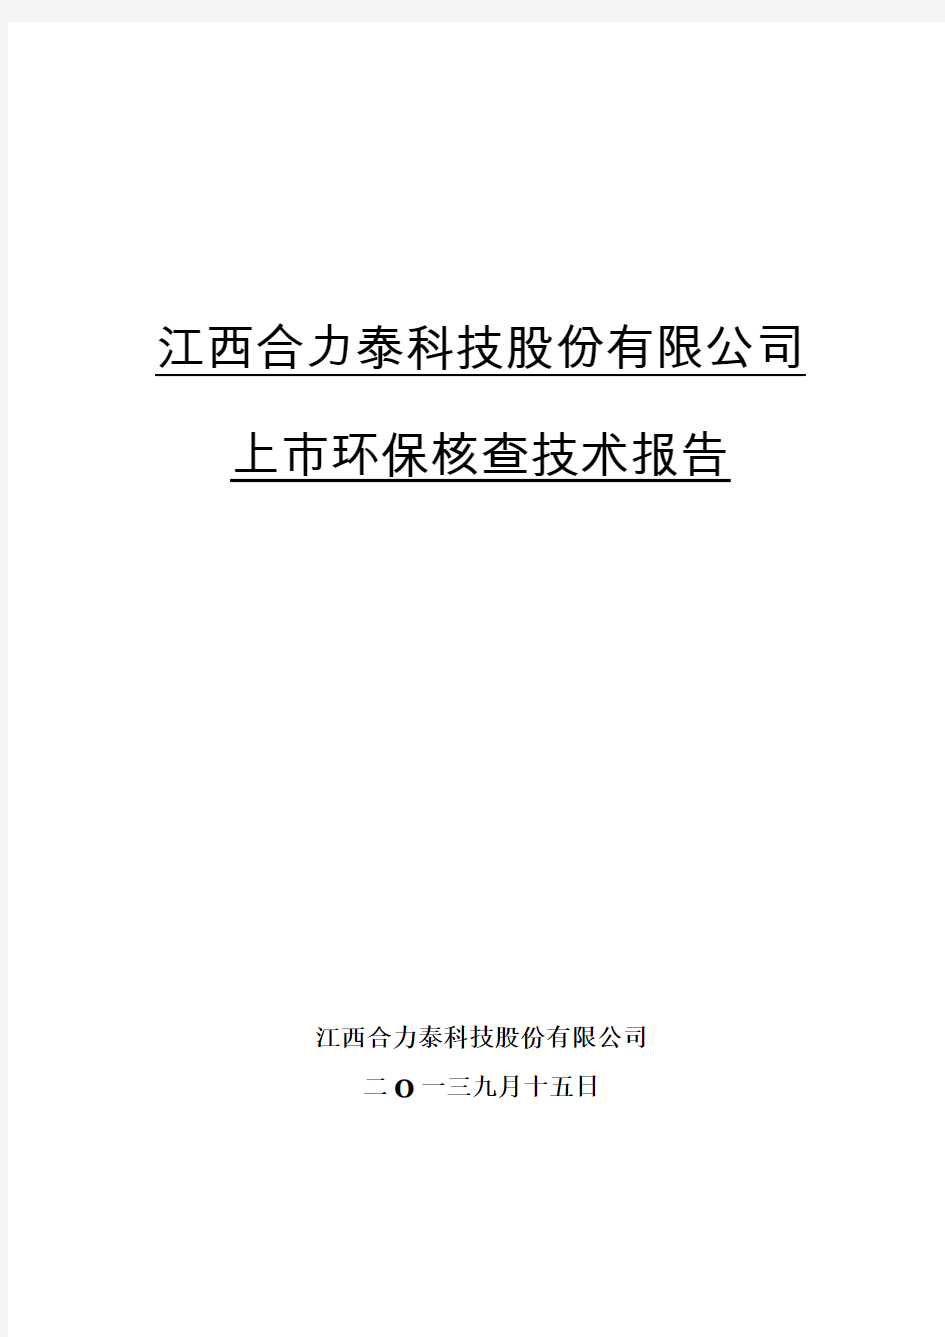 江西合力泰科技股份有限公司上市环保核查技术报告